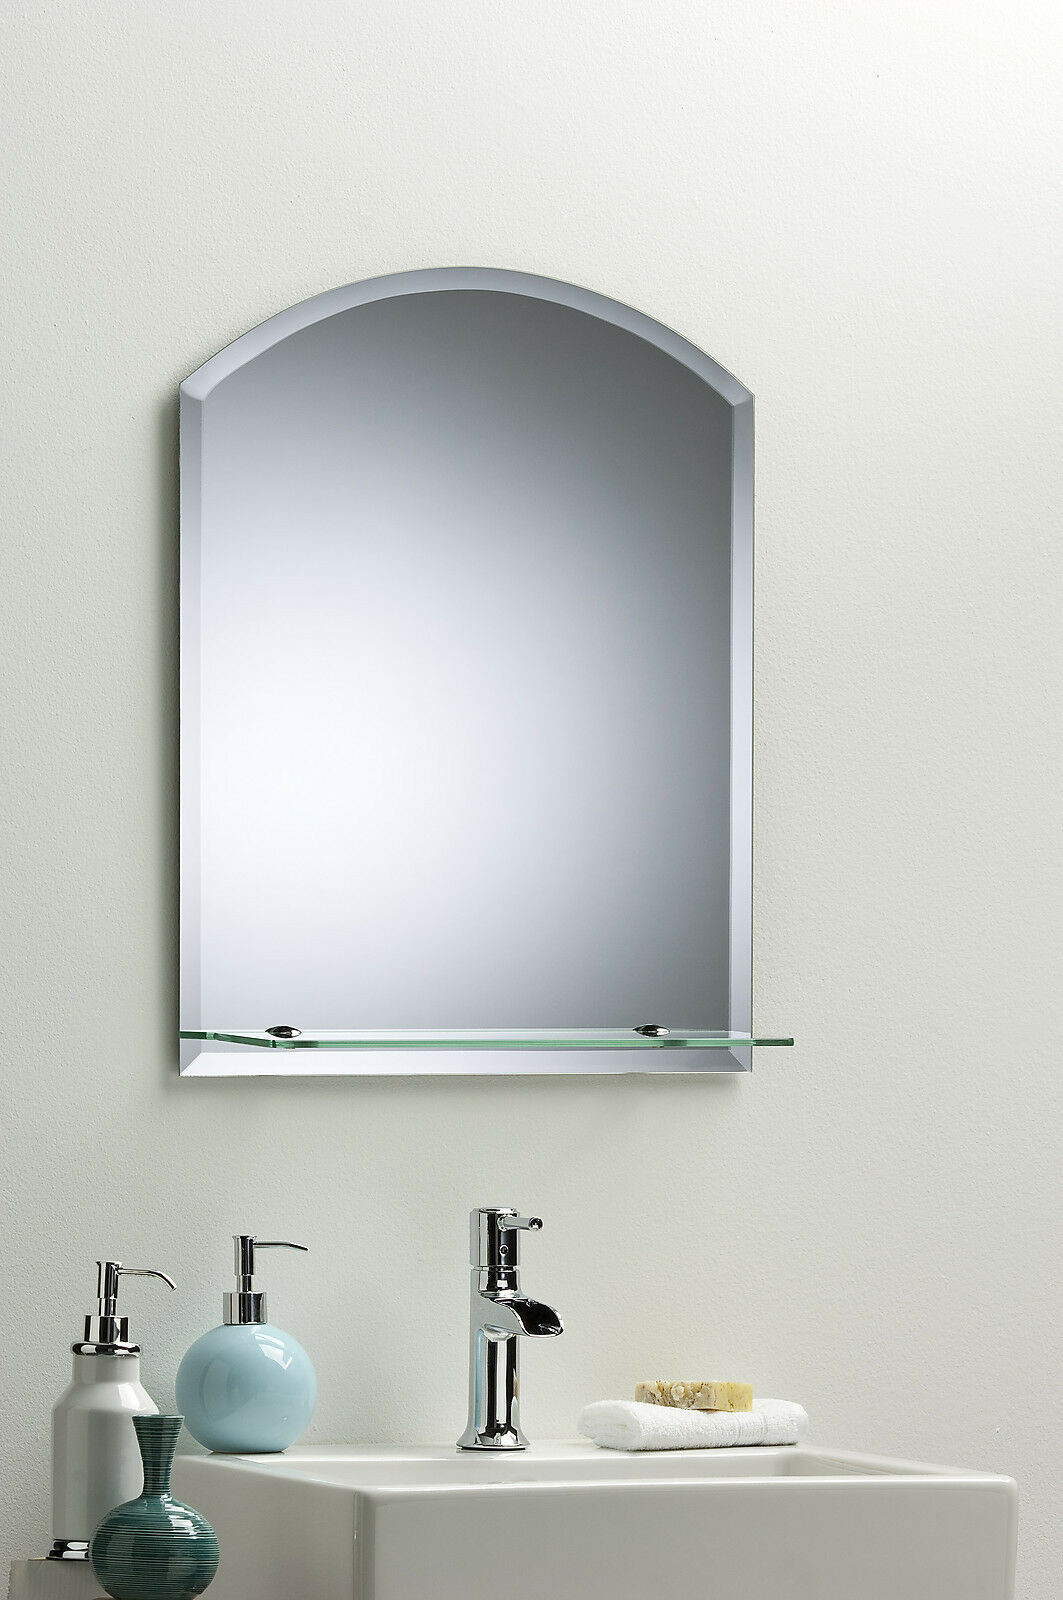 Modern Mirrors For Bathroom
 BATHROOM WALL MIRROR Modern Stylish ARCH With Shelf And